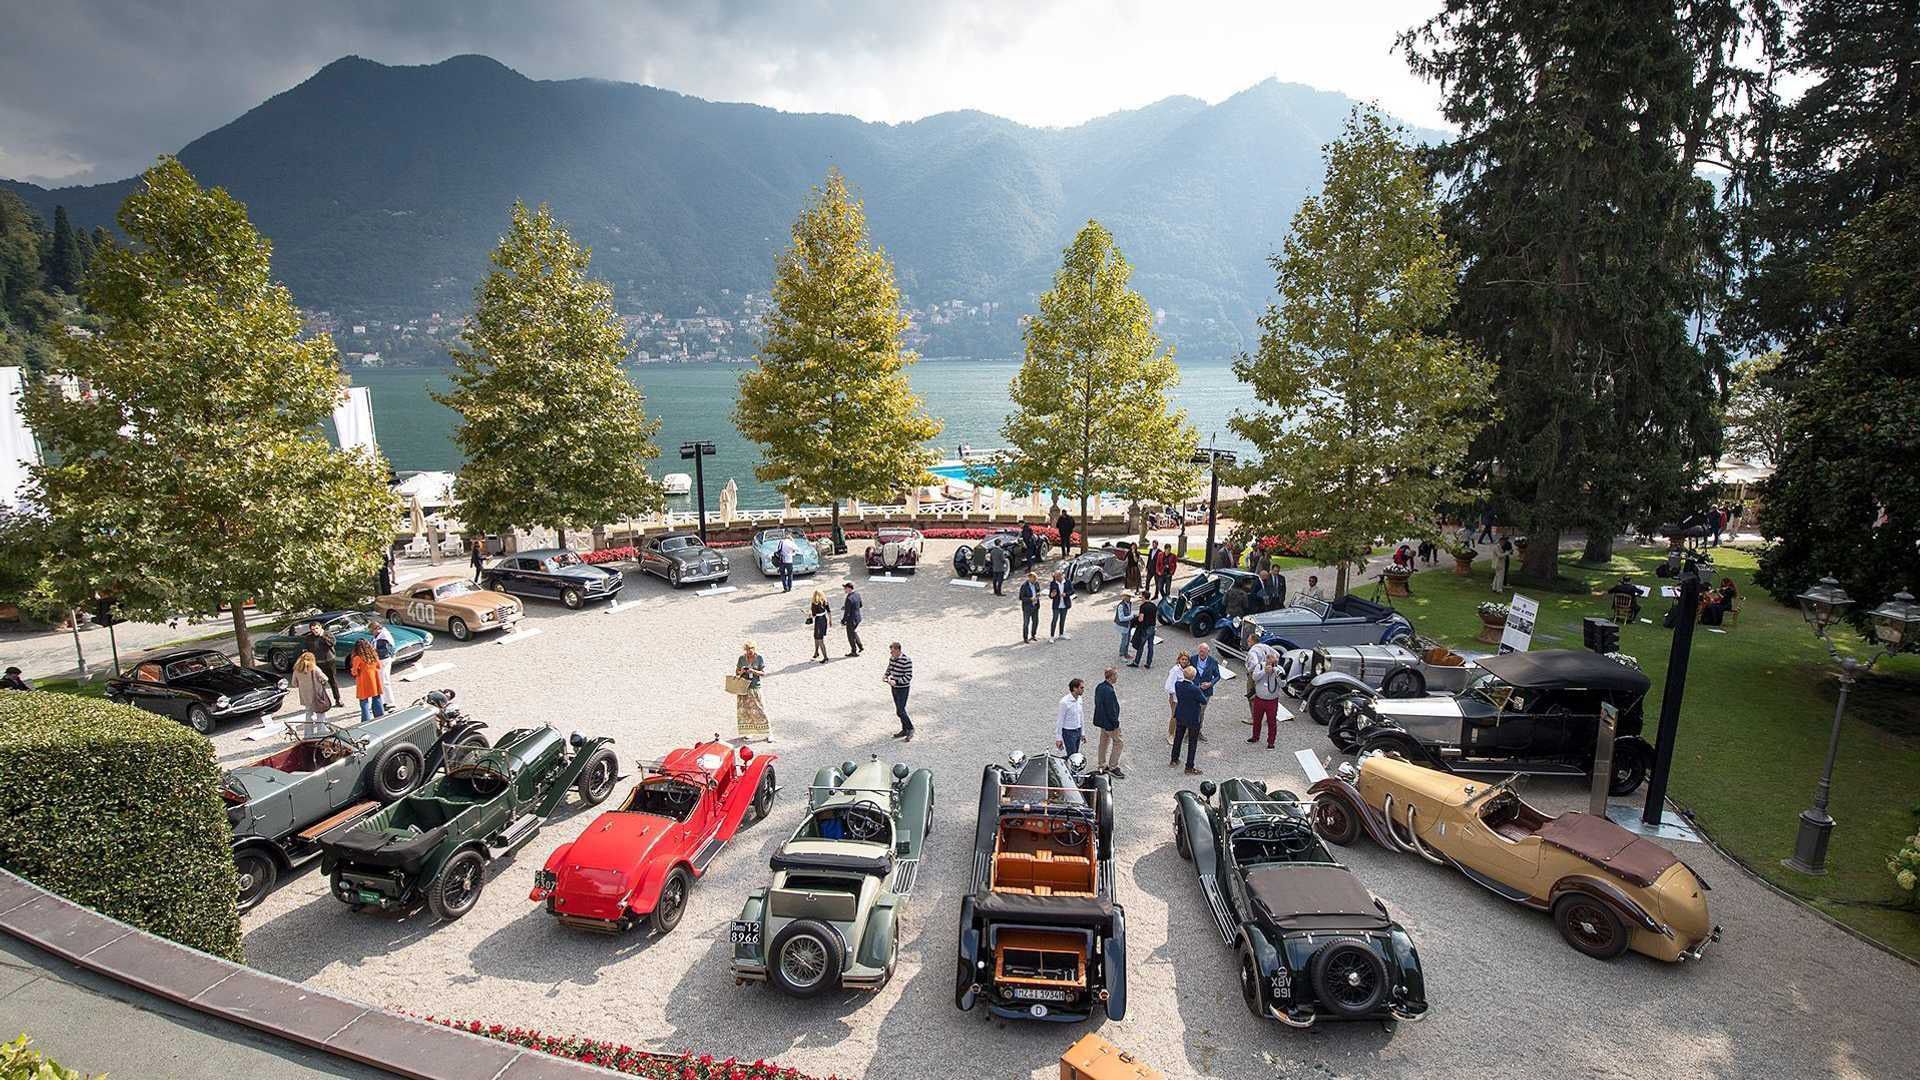 Los concursos de elegancia como el tradicional de Villa d'este en el lago di Como, son eventos en los que se ven autos clásicos de valores incalculables